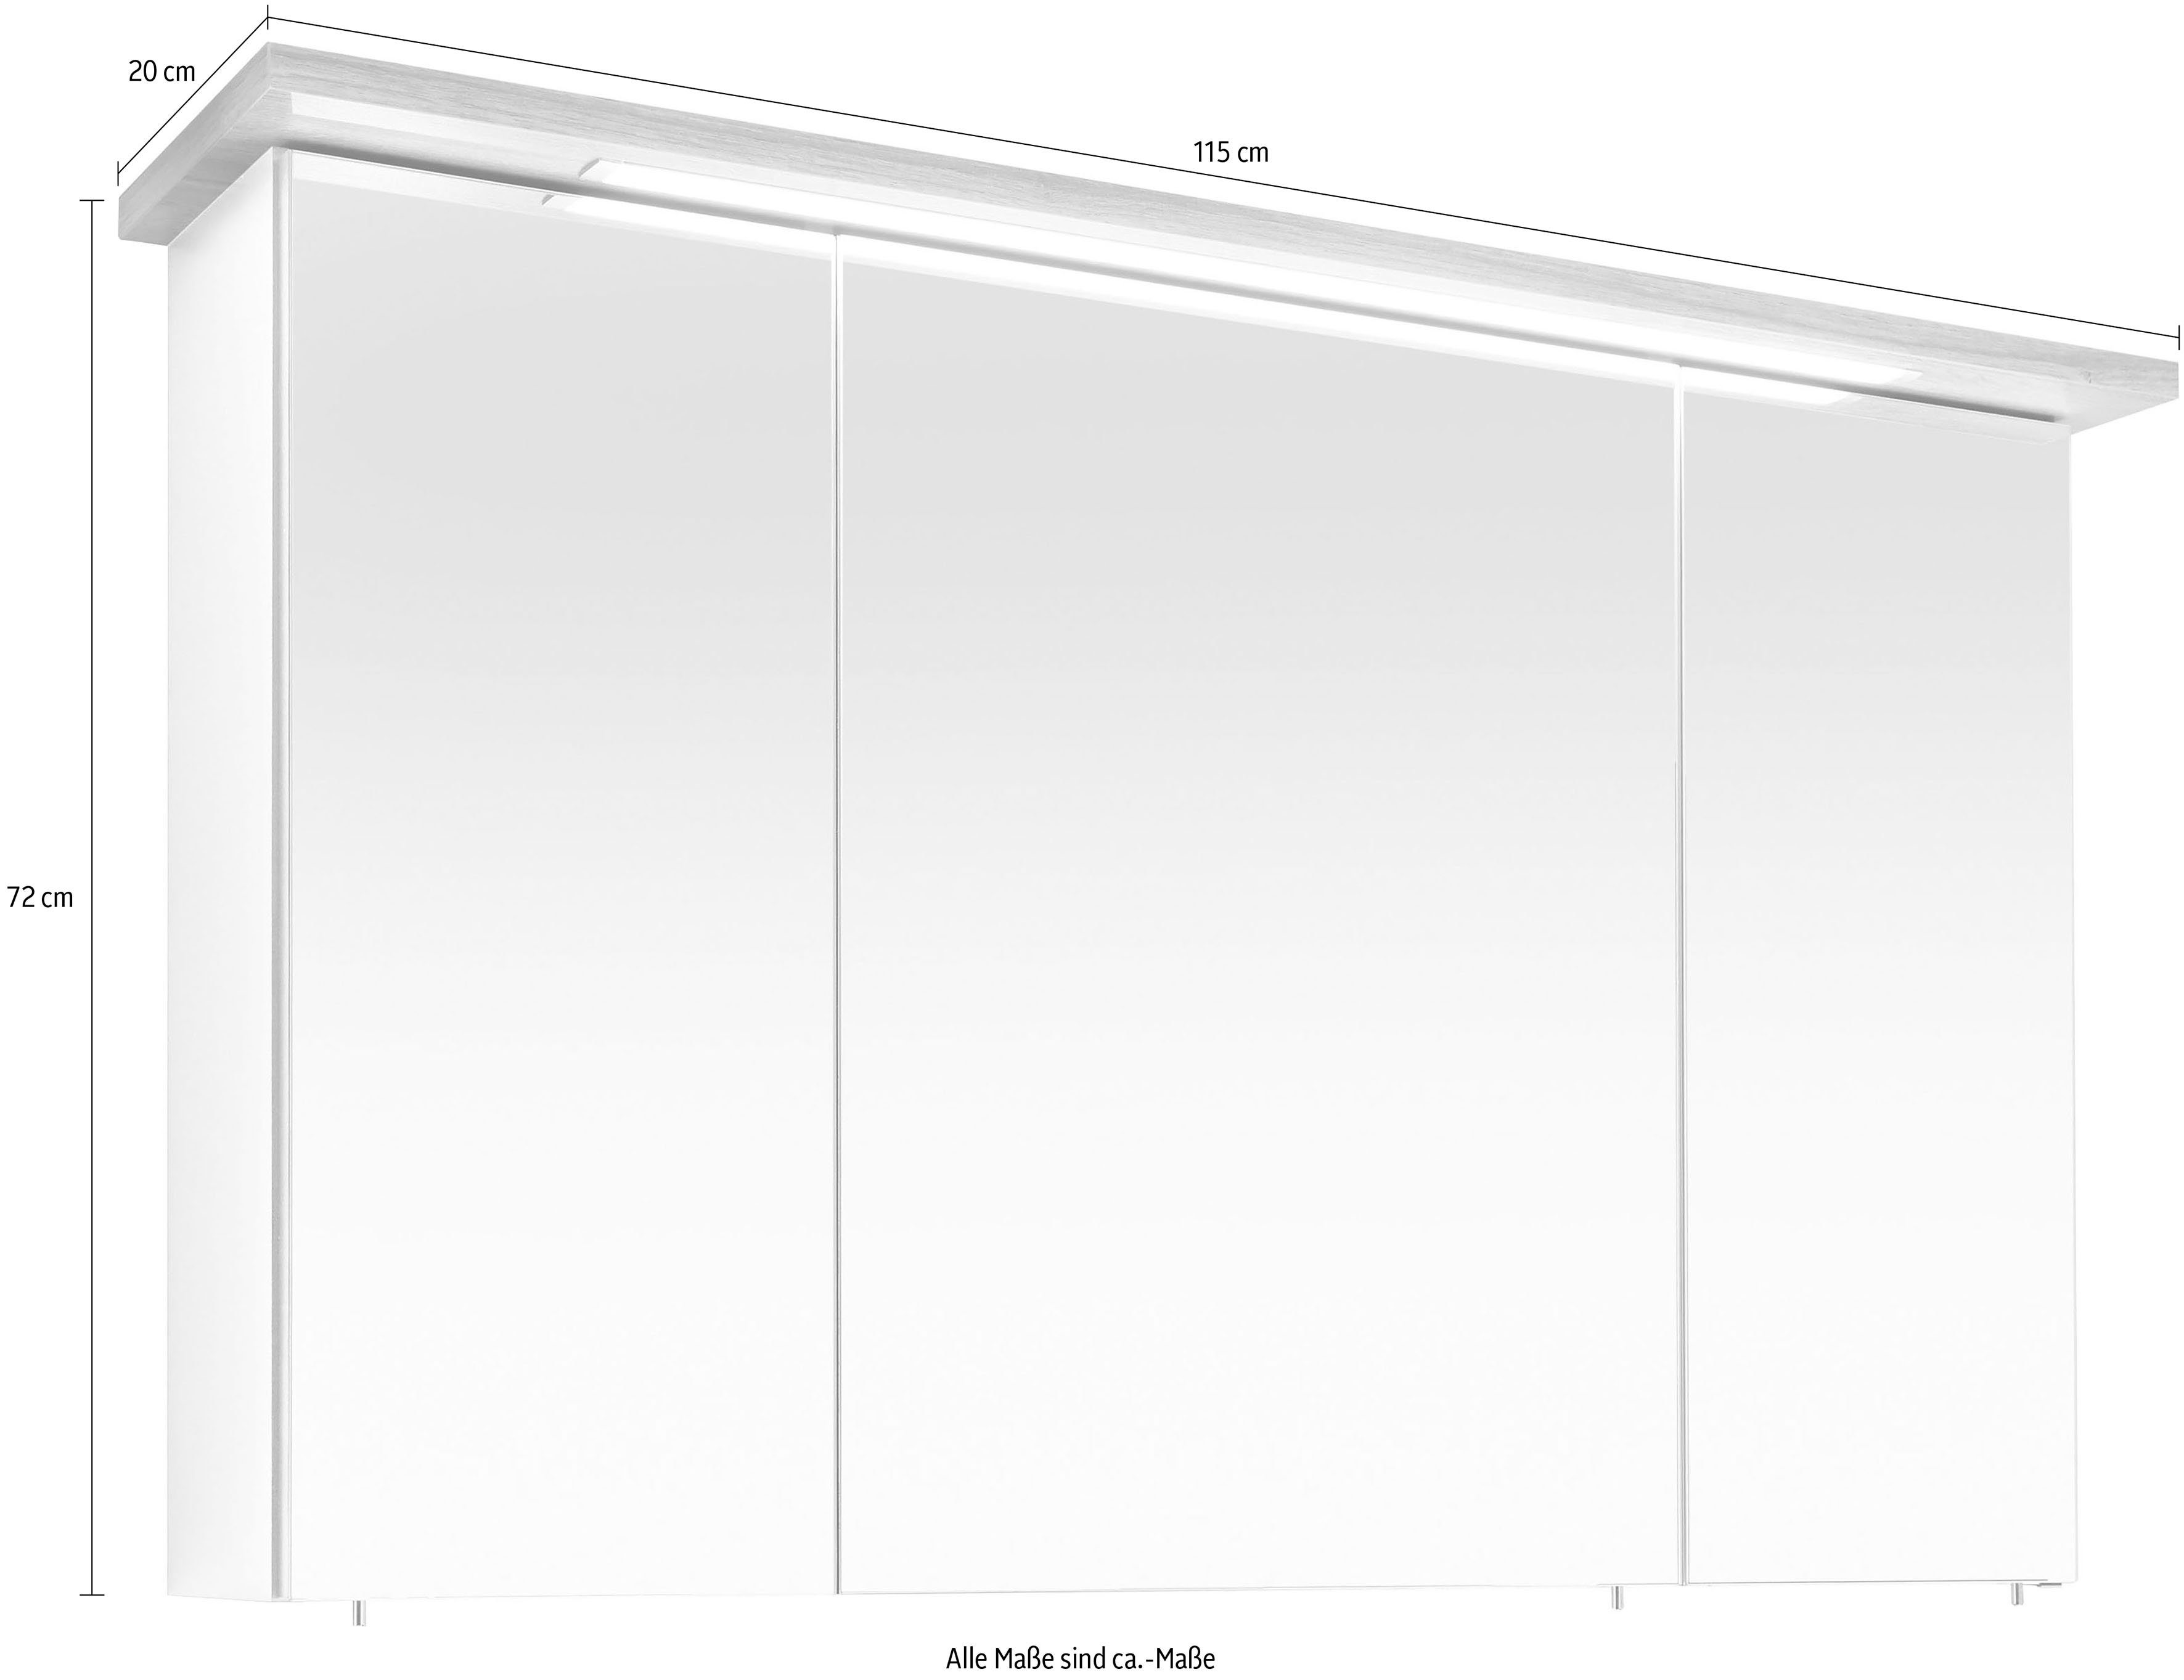 PELIPAL Spiegelschrank Quickset 923 Breite eingelassene LED-Beleuchtung, Steckdosenbox 3-türig, 115 cm